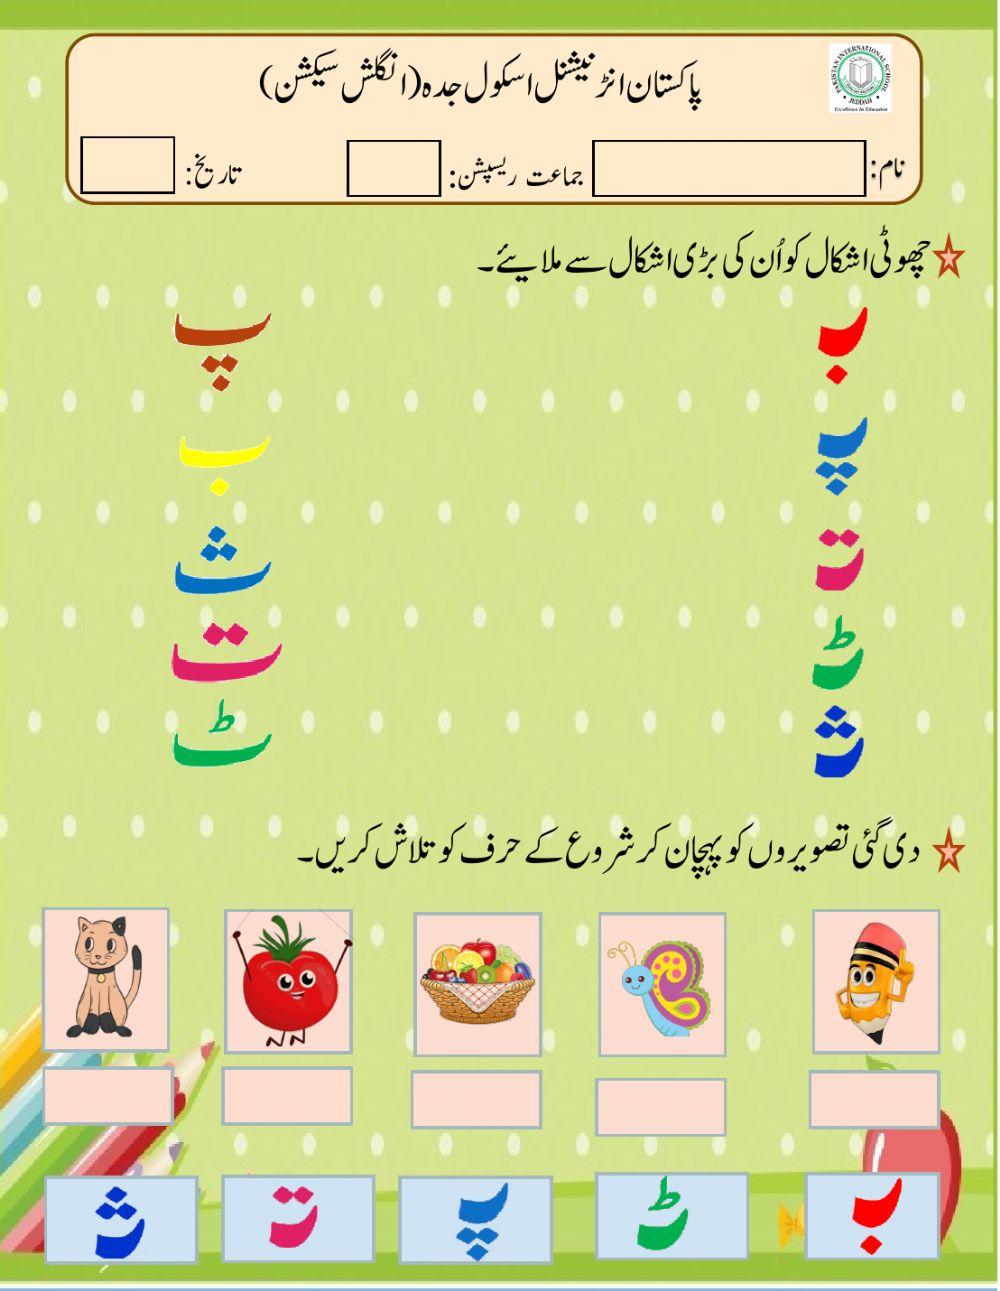 Urdu worksheet for YR